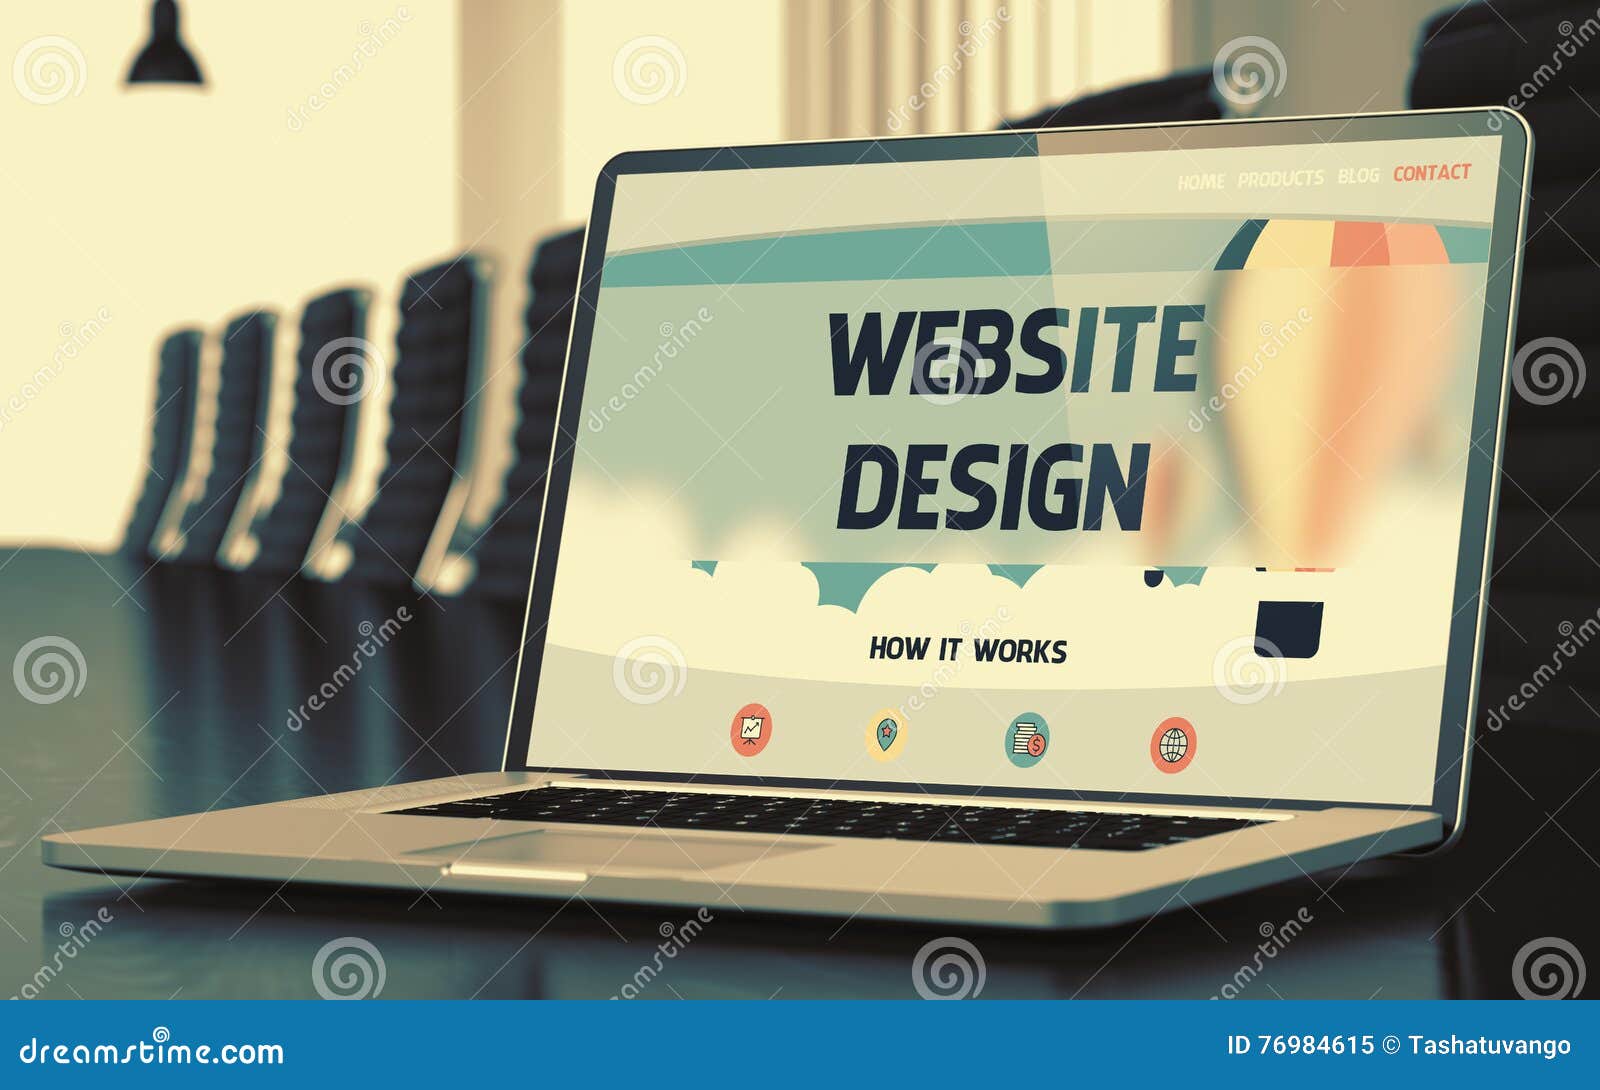 Thiết kế website là một công việc có tính sáng tạo cao và đòi hỏi cả kỹ năng kỹ thuật. Nếu bạn đang lên kế hoạch cho một trang web mới hoặc muốn nâng cấp trang web của mình, hãy tìm hiểu về thiết kế website và các dịch vụ liên quan thông qua hình ảnh liên quan. Công việc của bạn sẽ trở nên dễ dàng hơn với sự hỗ trợ của những người đam mê lĩnh vực này.